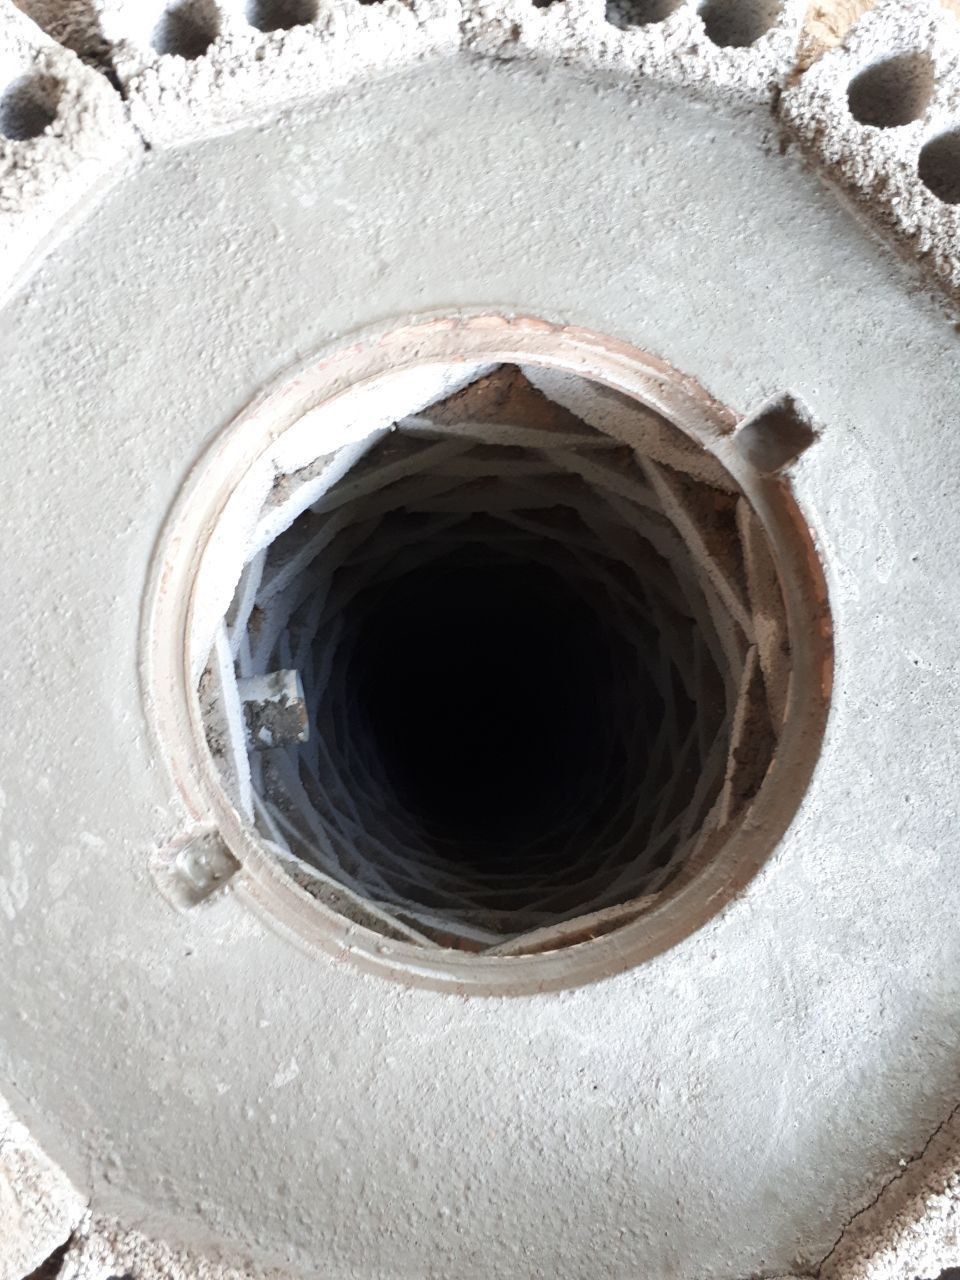 Urachi урачи kanalizatsiya padval patkop  kalodes tunel bassen  yama